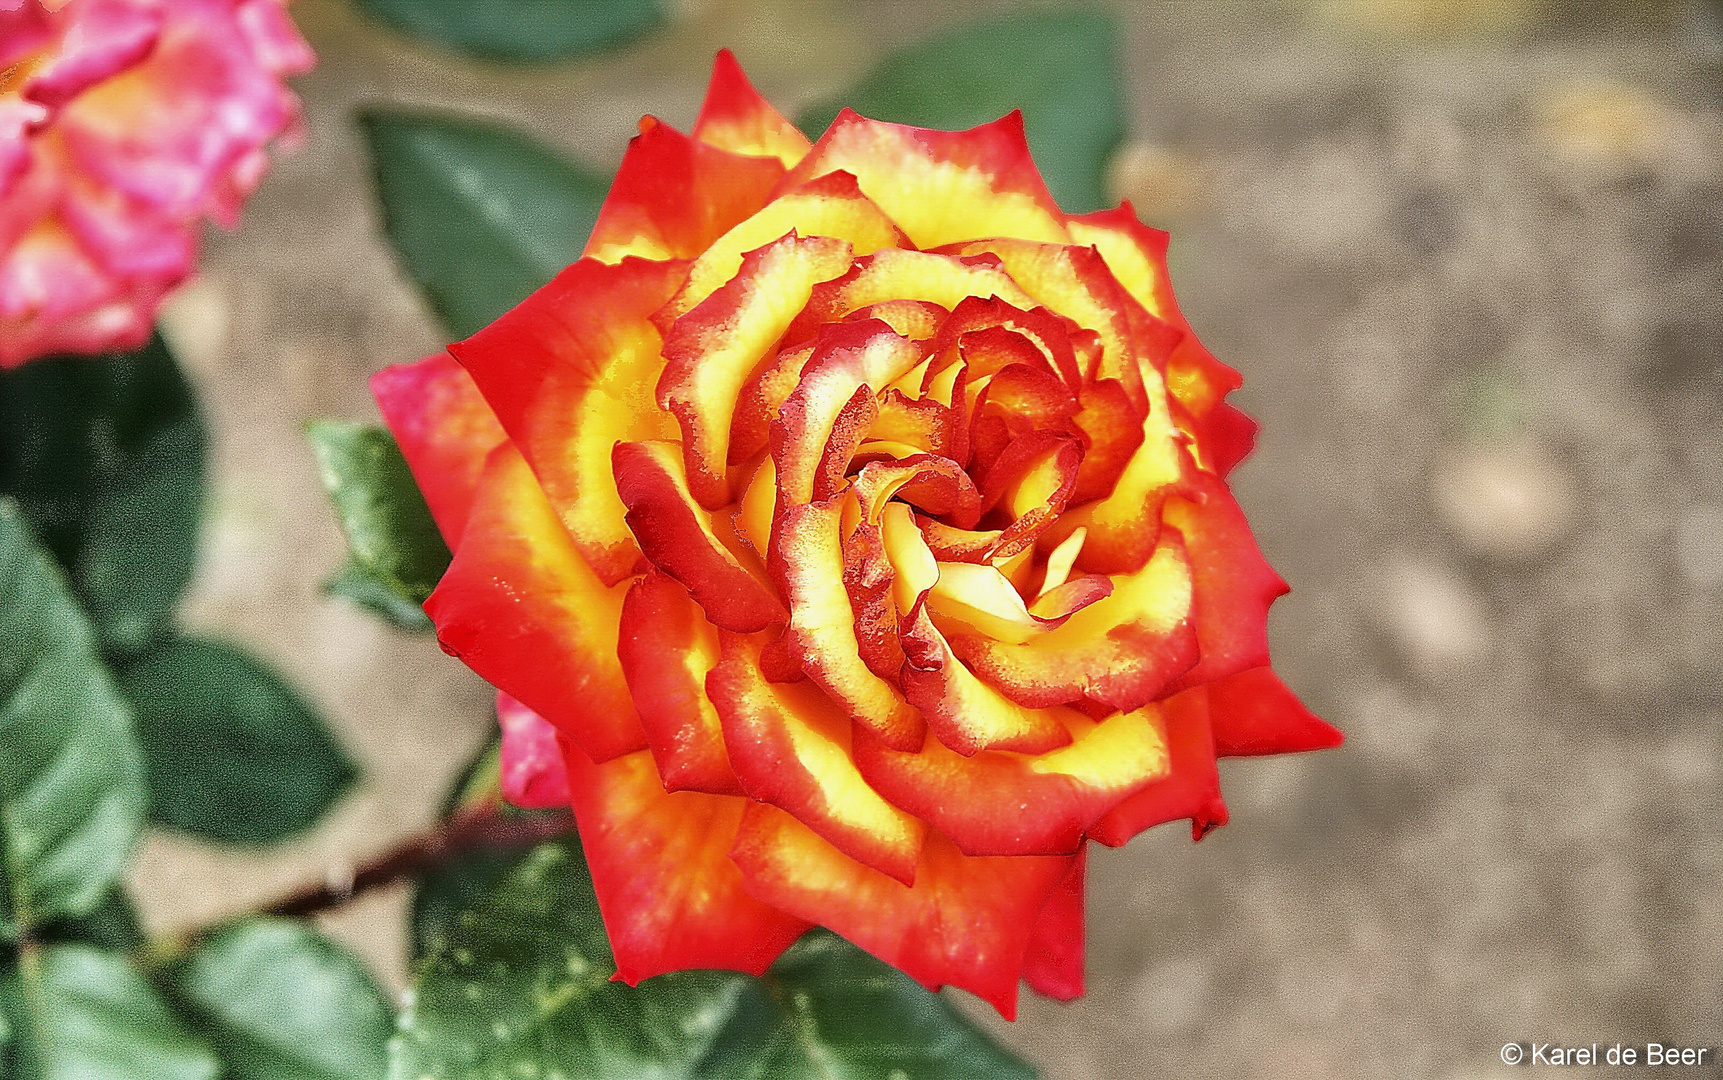 Flamed Rose 1